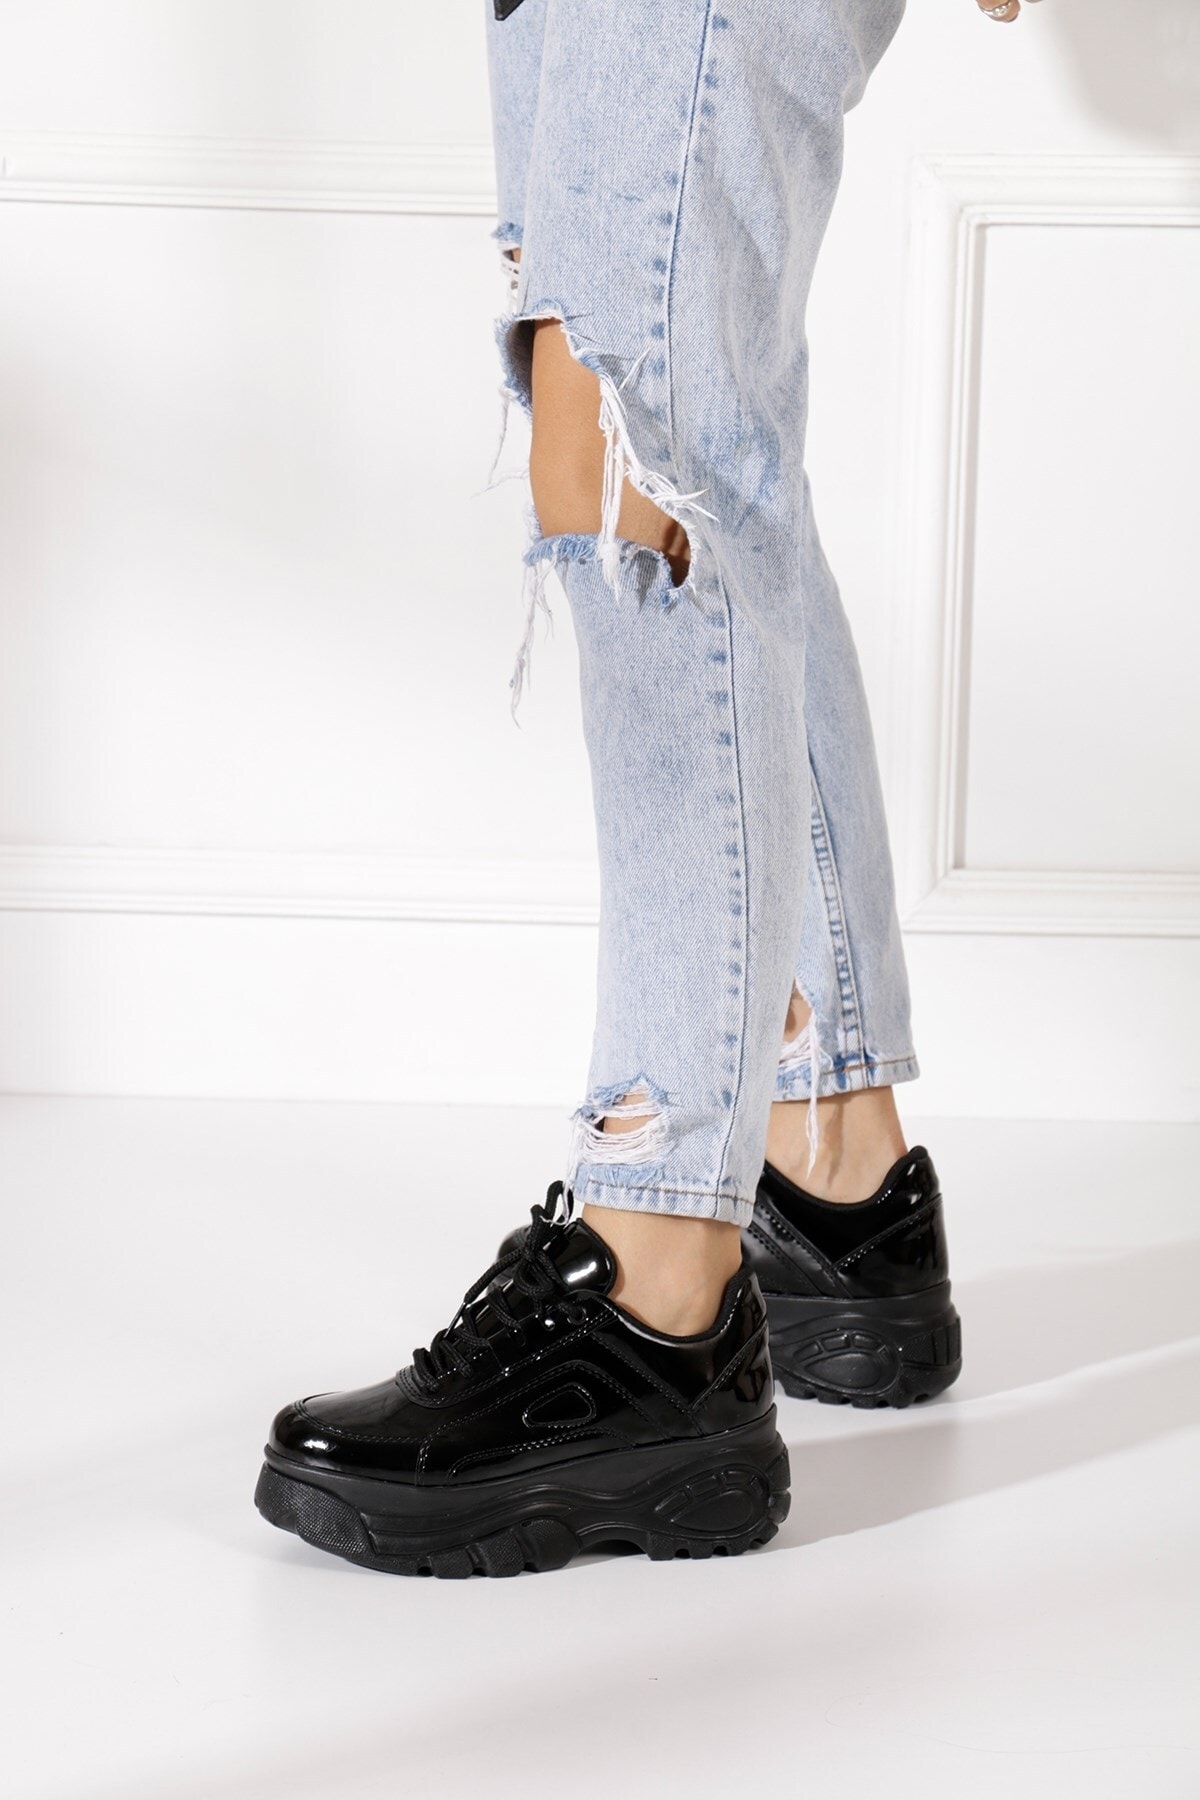 İmerShoes Günlük Kadın Siyah Rugan Spor Ayakkabı Yüksek Taban 6 Cm Rahat Hafif Sneaker 001